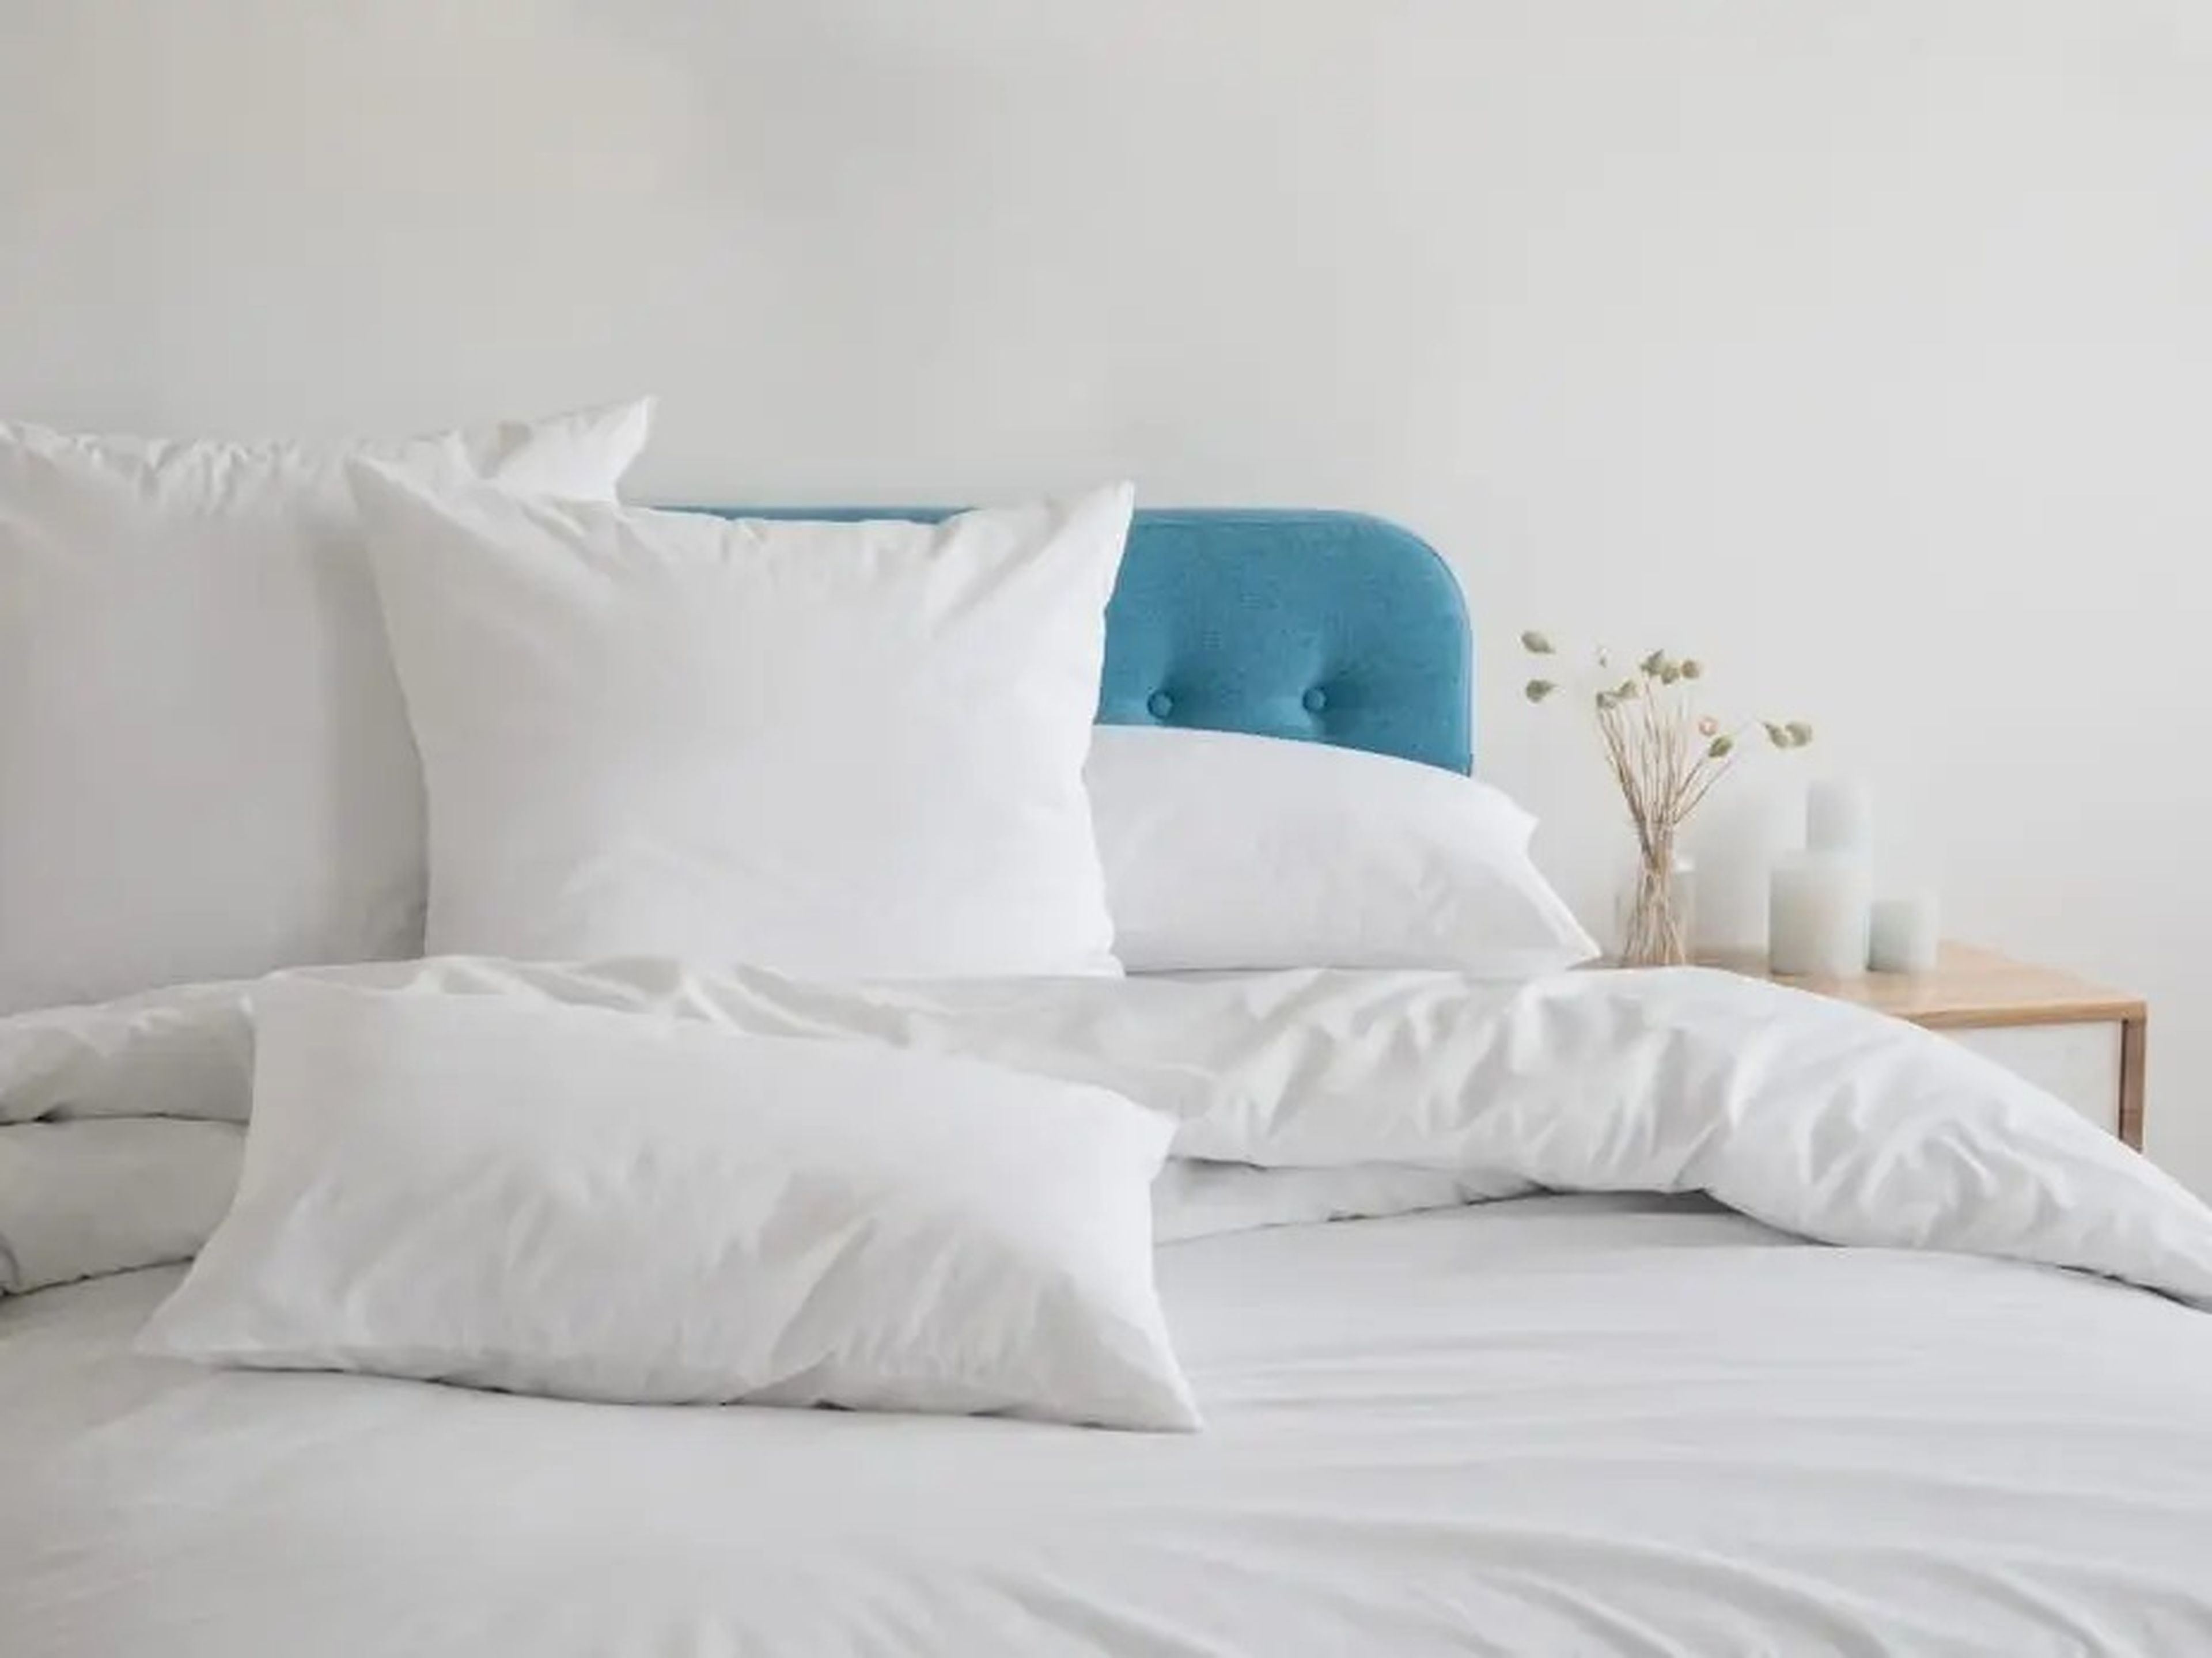 Almohadas, edredón y funda nórdica blancos sobre una cama azul.